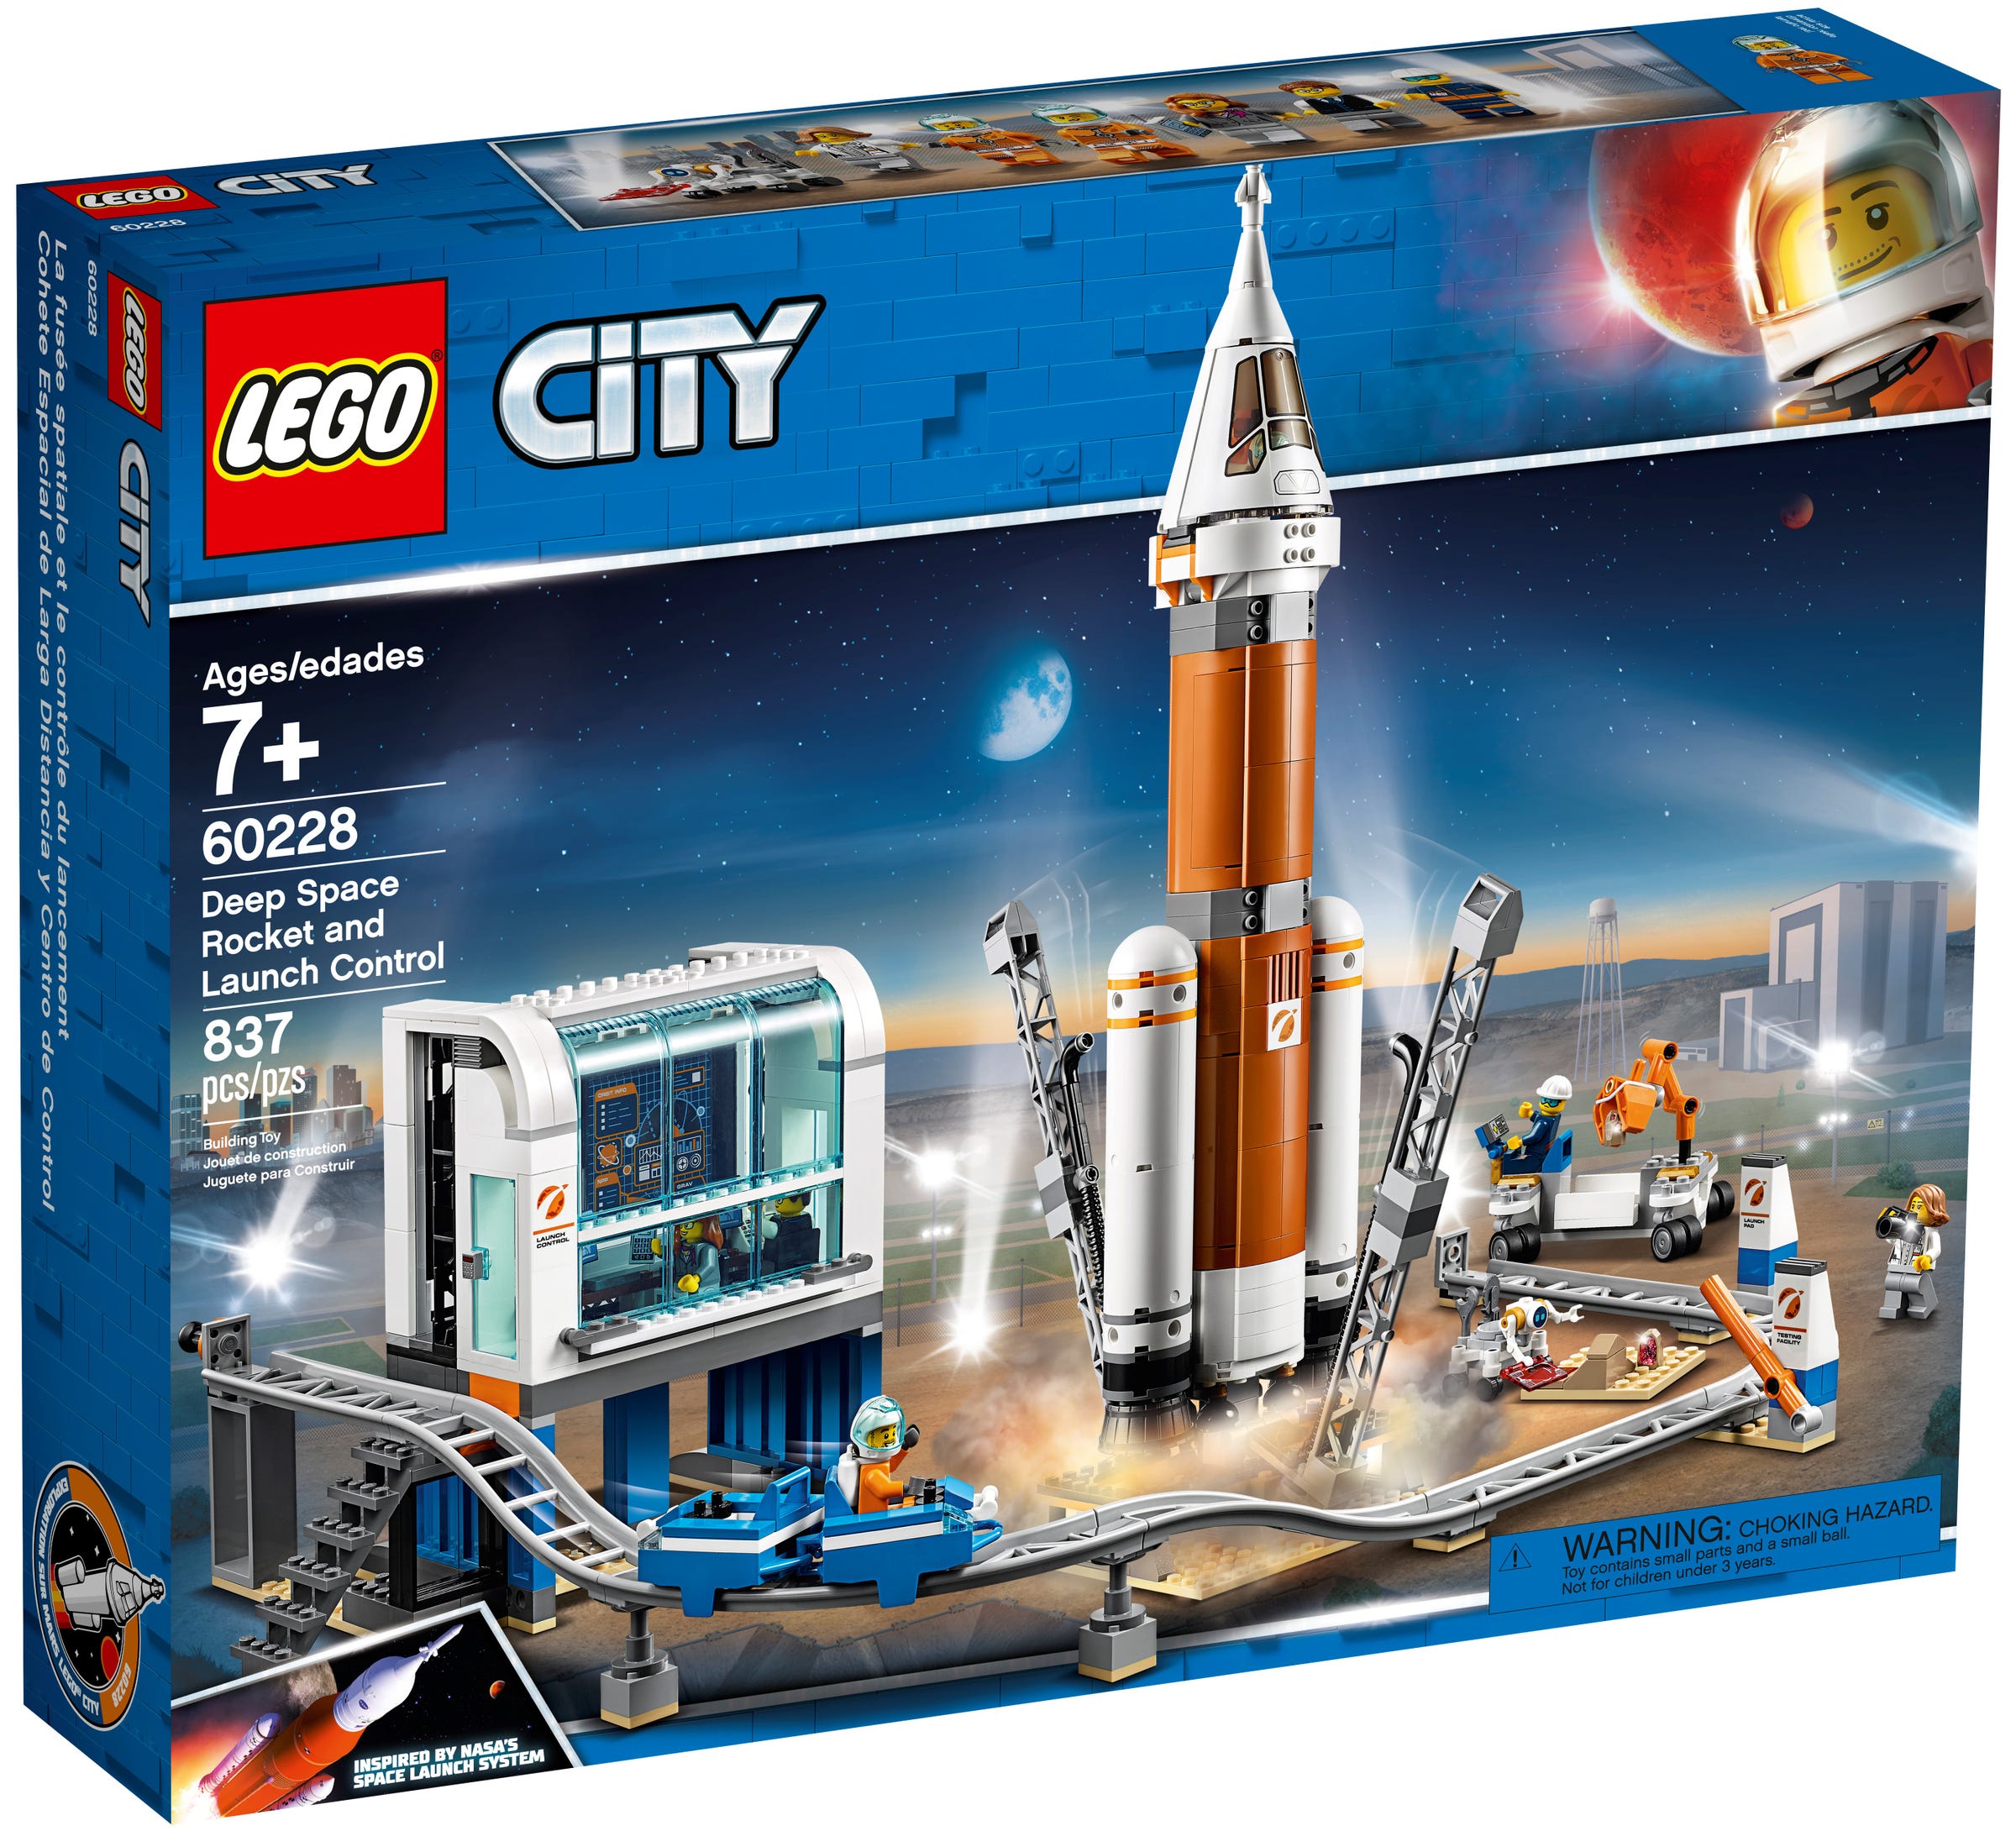 LEGO City Weltraumrakete mit Kontrollzentrum (60228) - im GOLDSTIEN.SHOP verfügbar mit Gratisversand ab Schweizer Lager! (5702016370485)